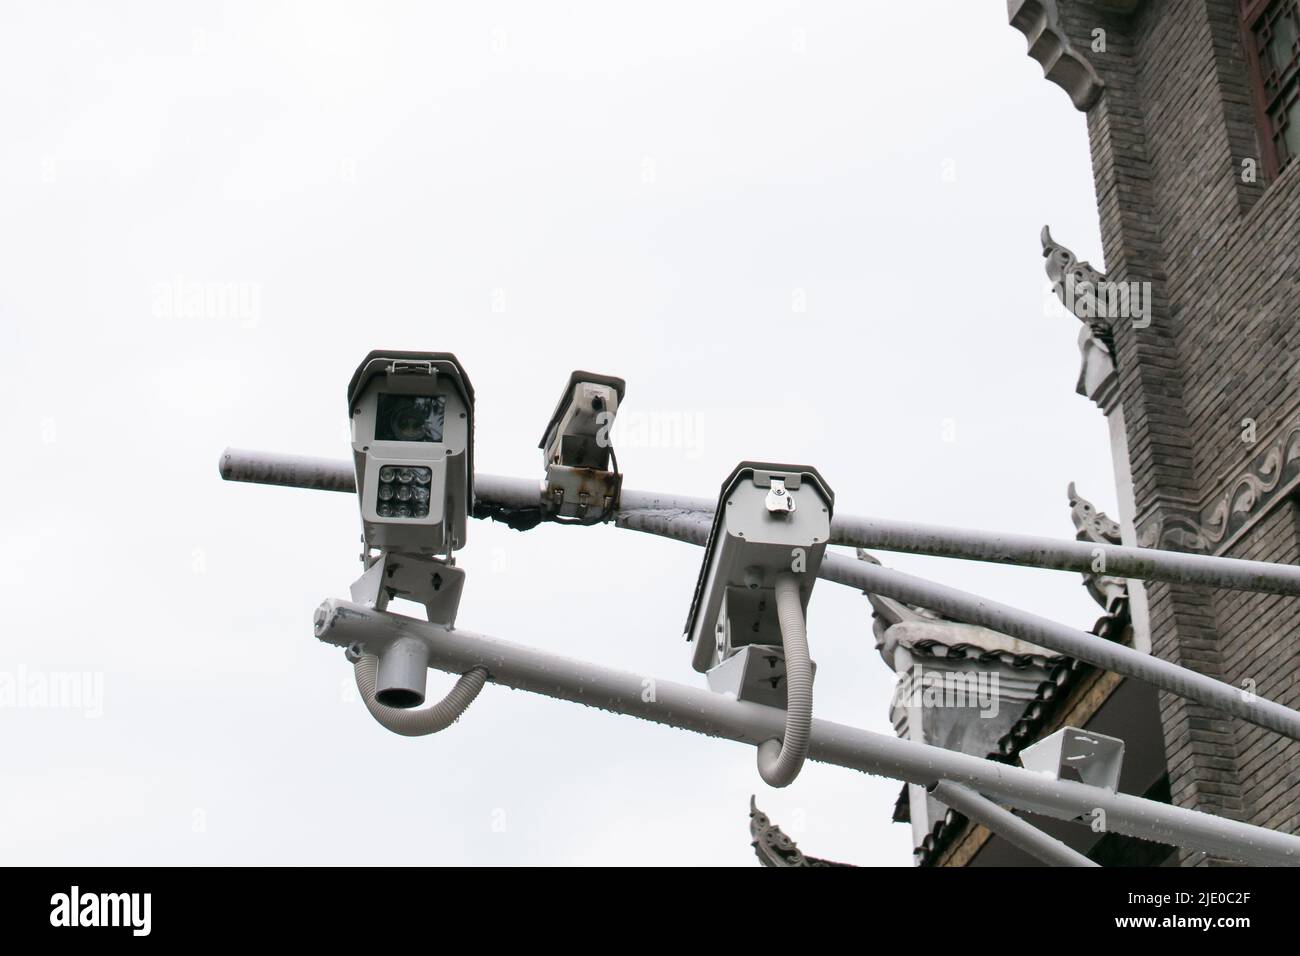 Telecamere di sicurezza CCTV nell'antica città di Fenghuang, Cina. Foto Stock